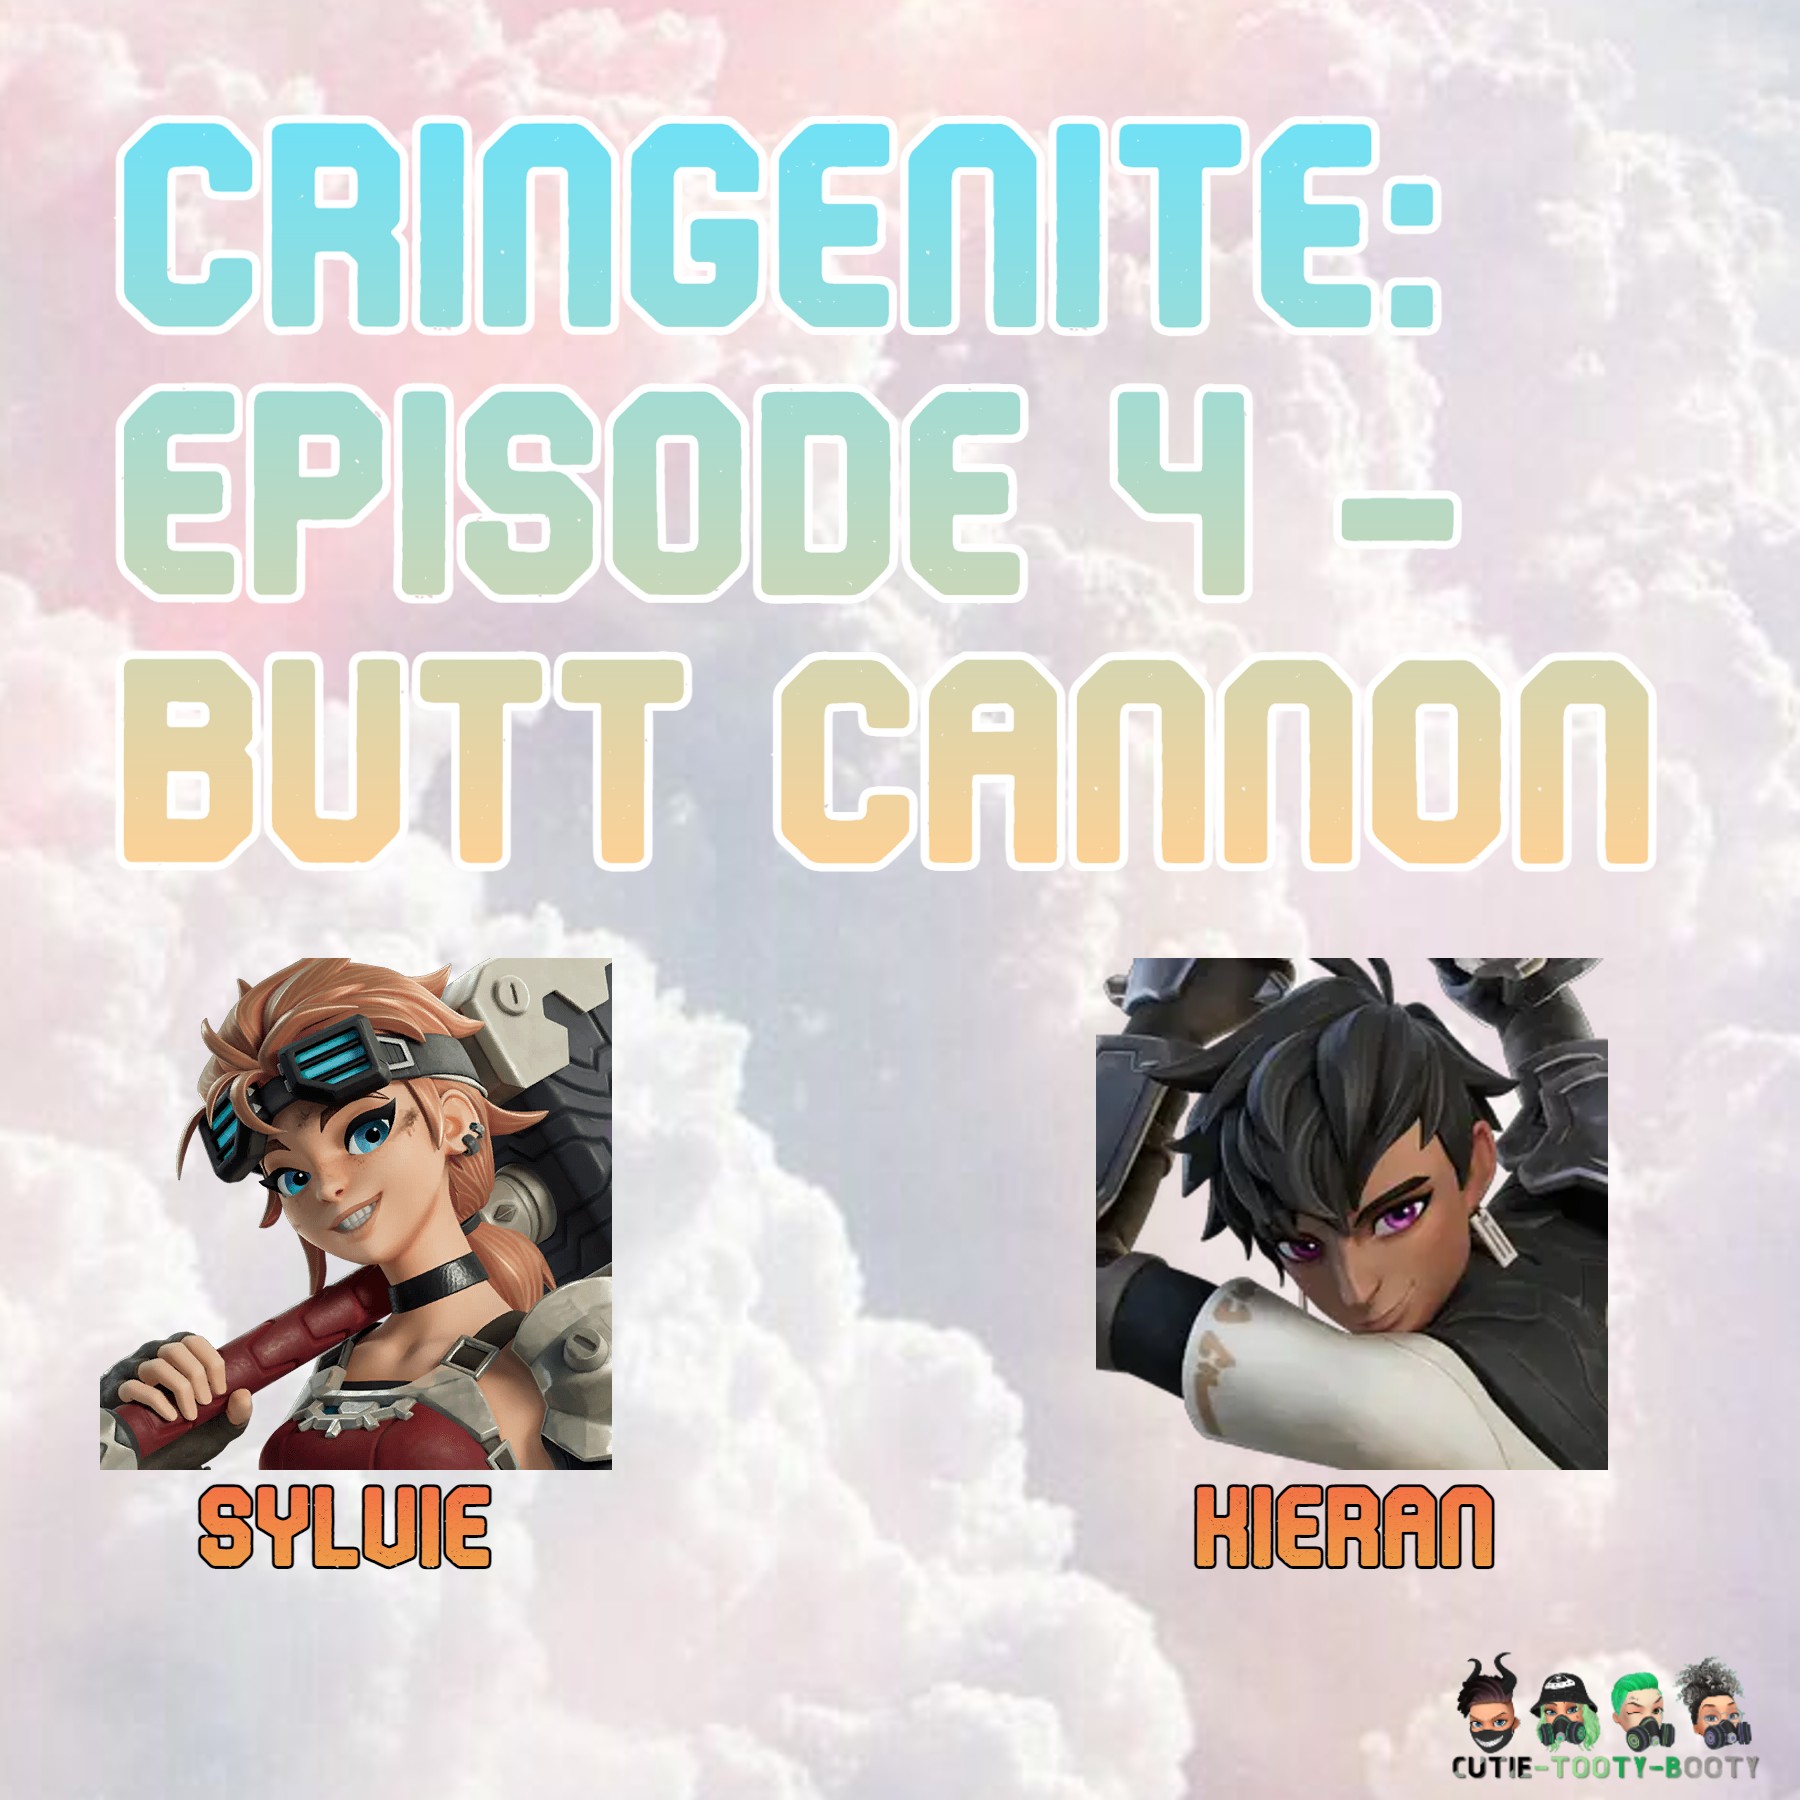 CringeNite: Episode 4 - Butt Cannon